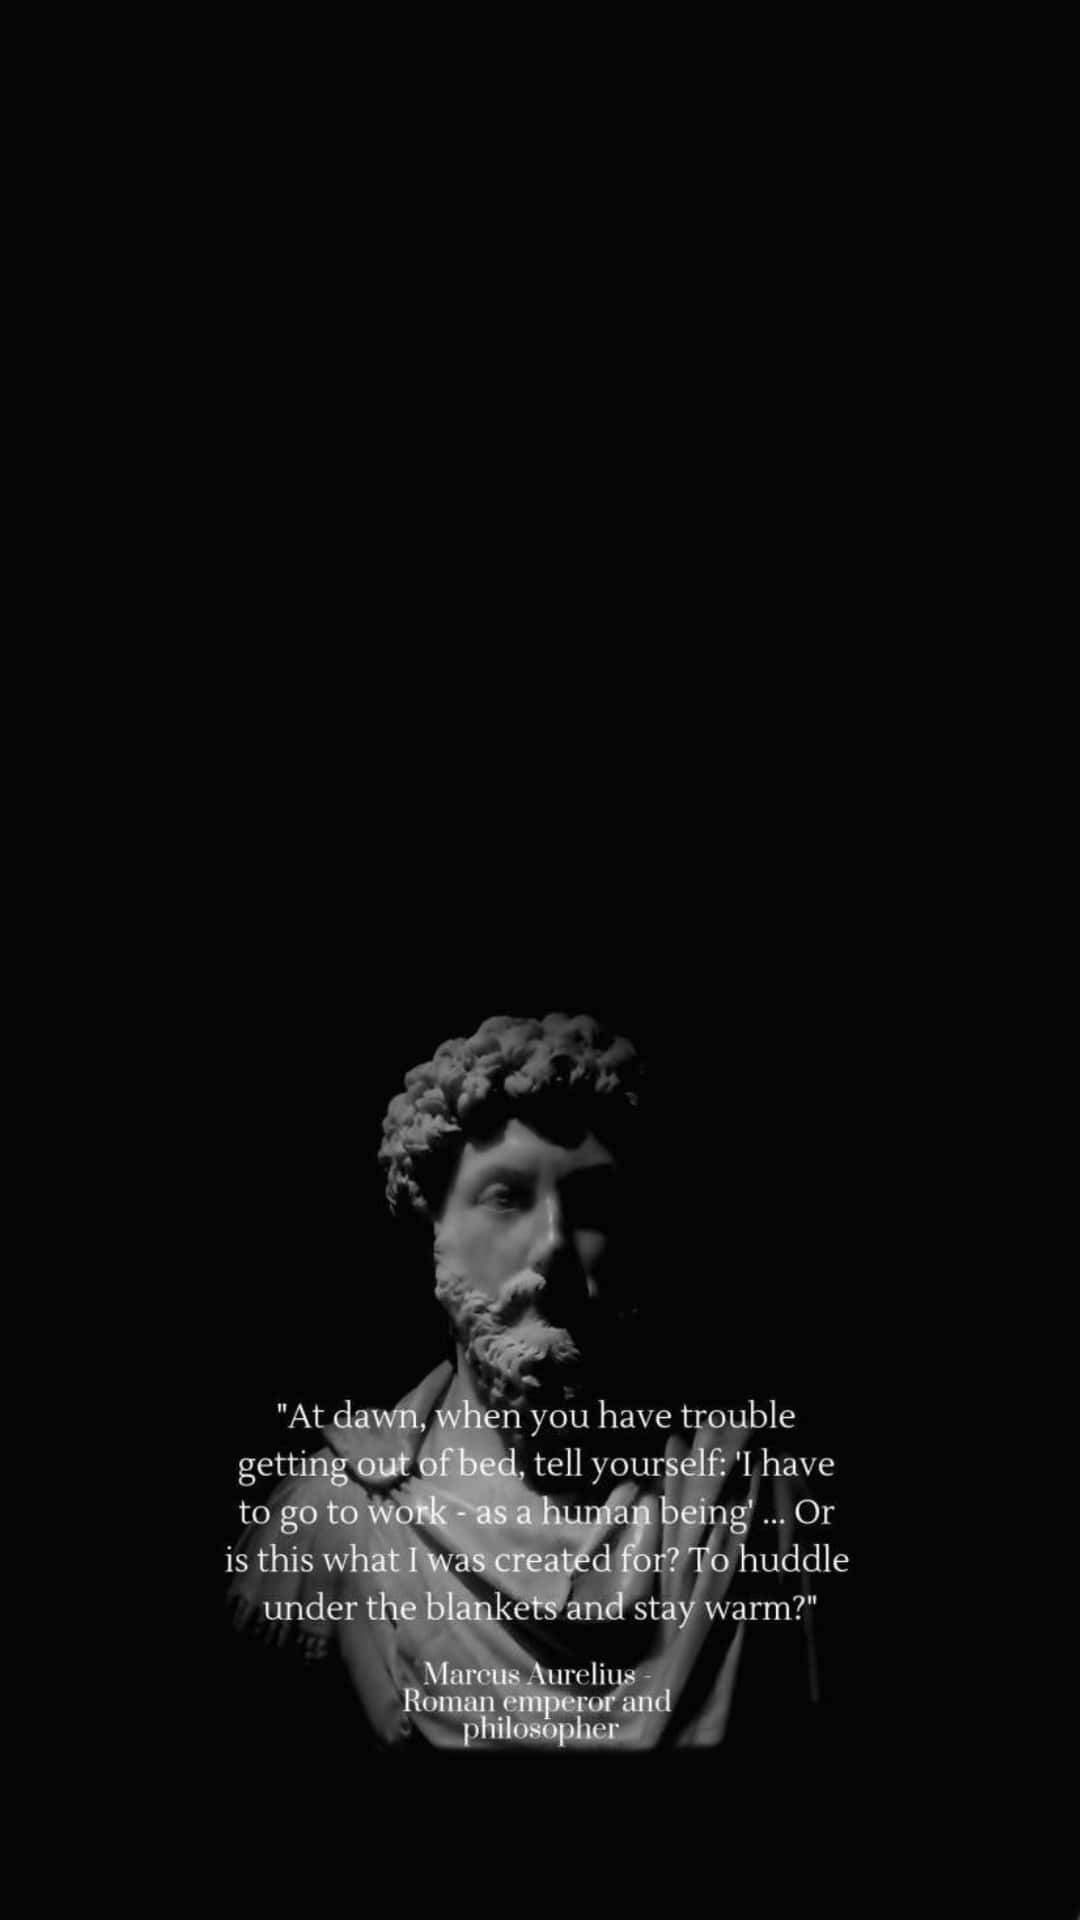 Marcus Aurelius Philosophical Quote Wallpaper